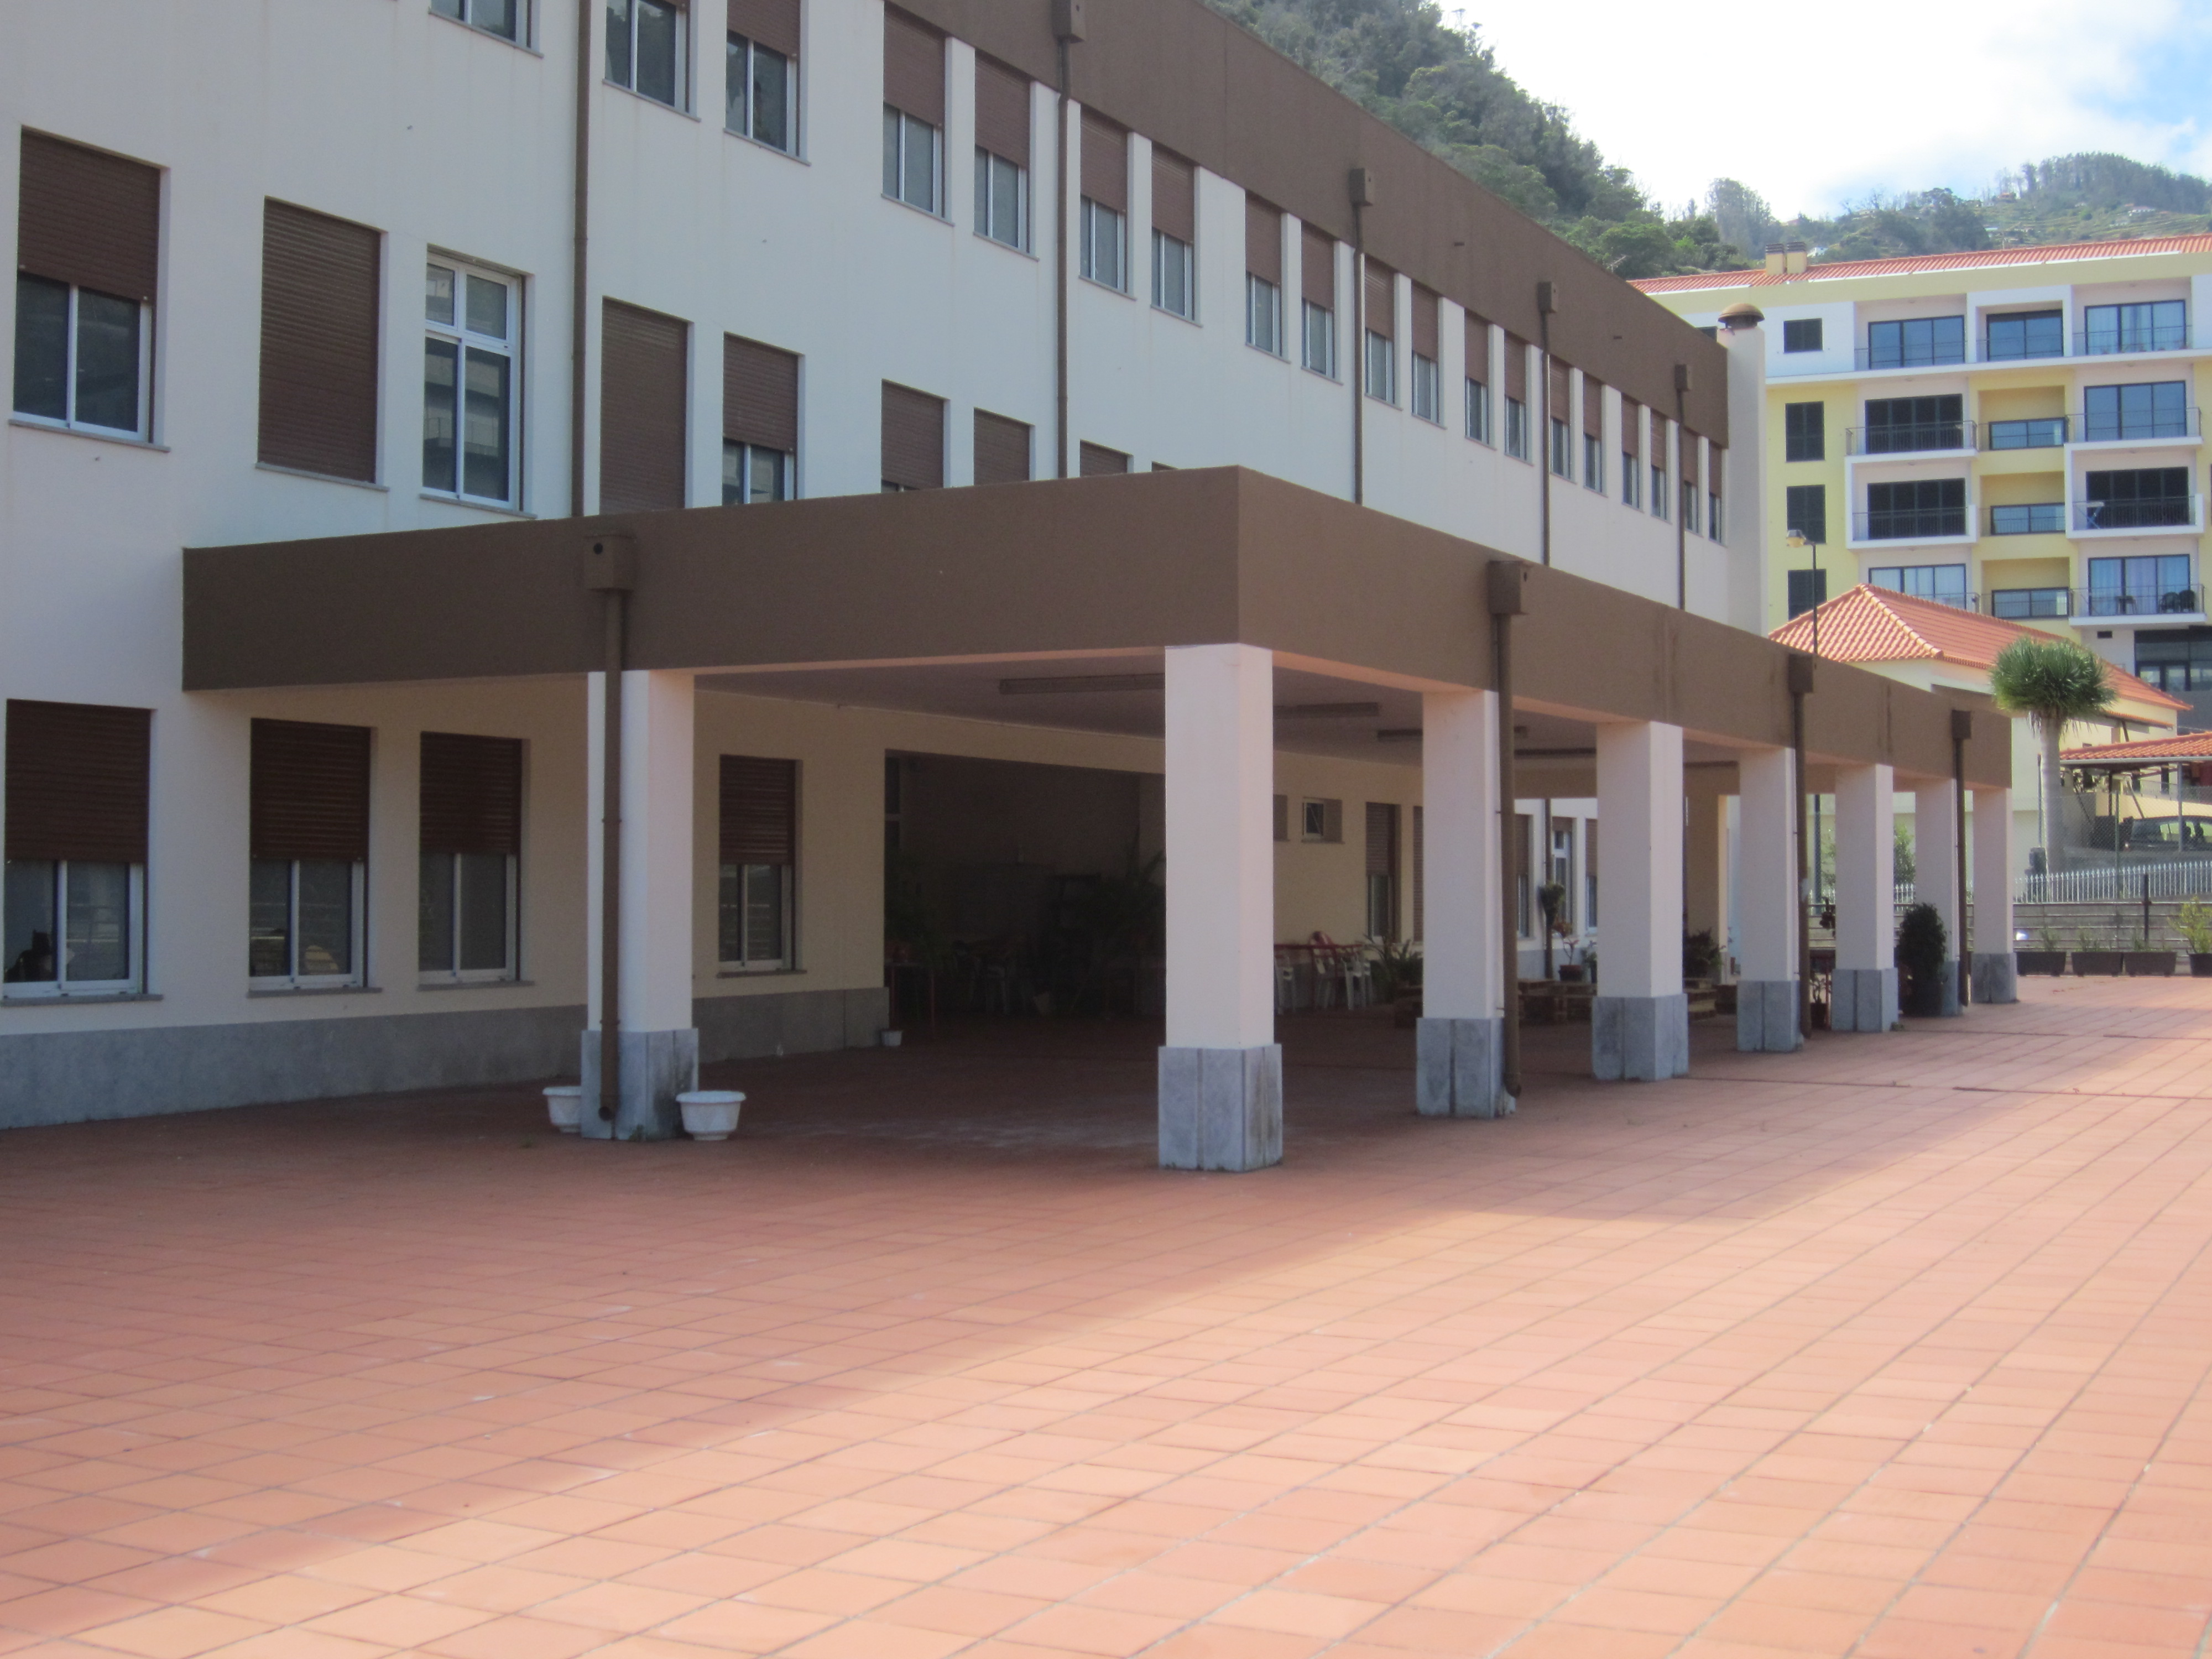 Sala de sessões construída na escola de Santa Cruz